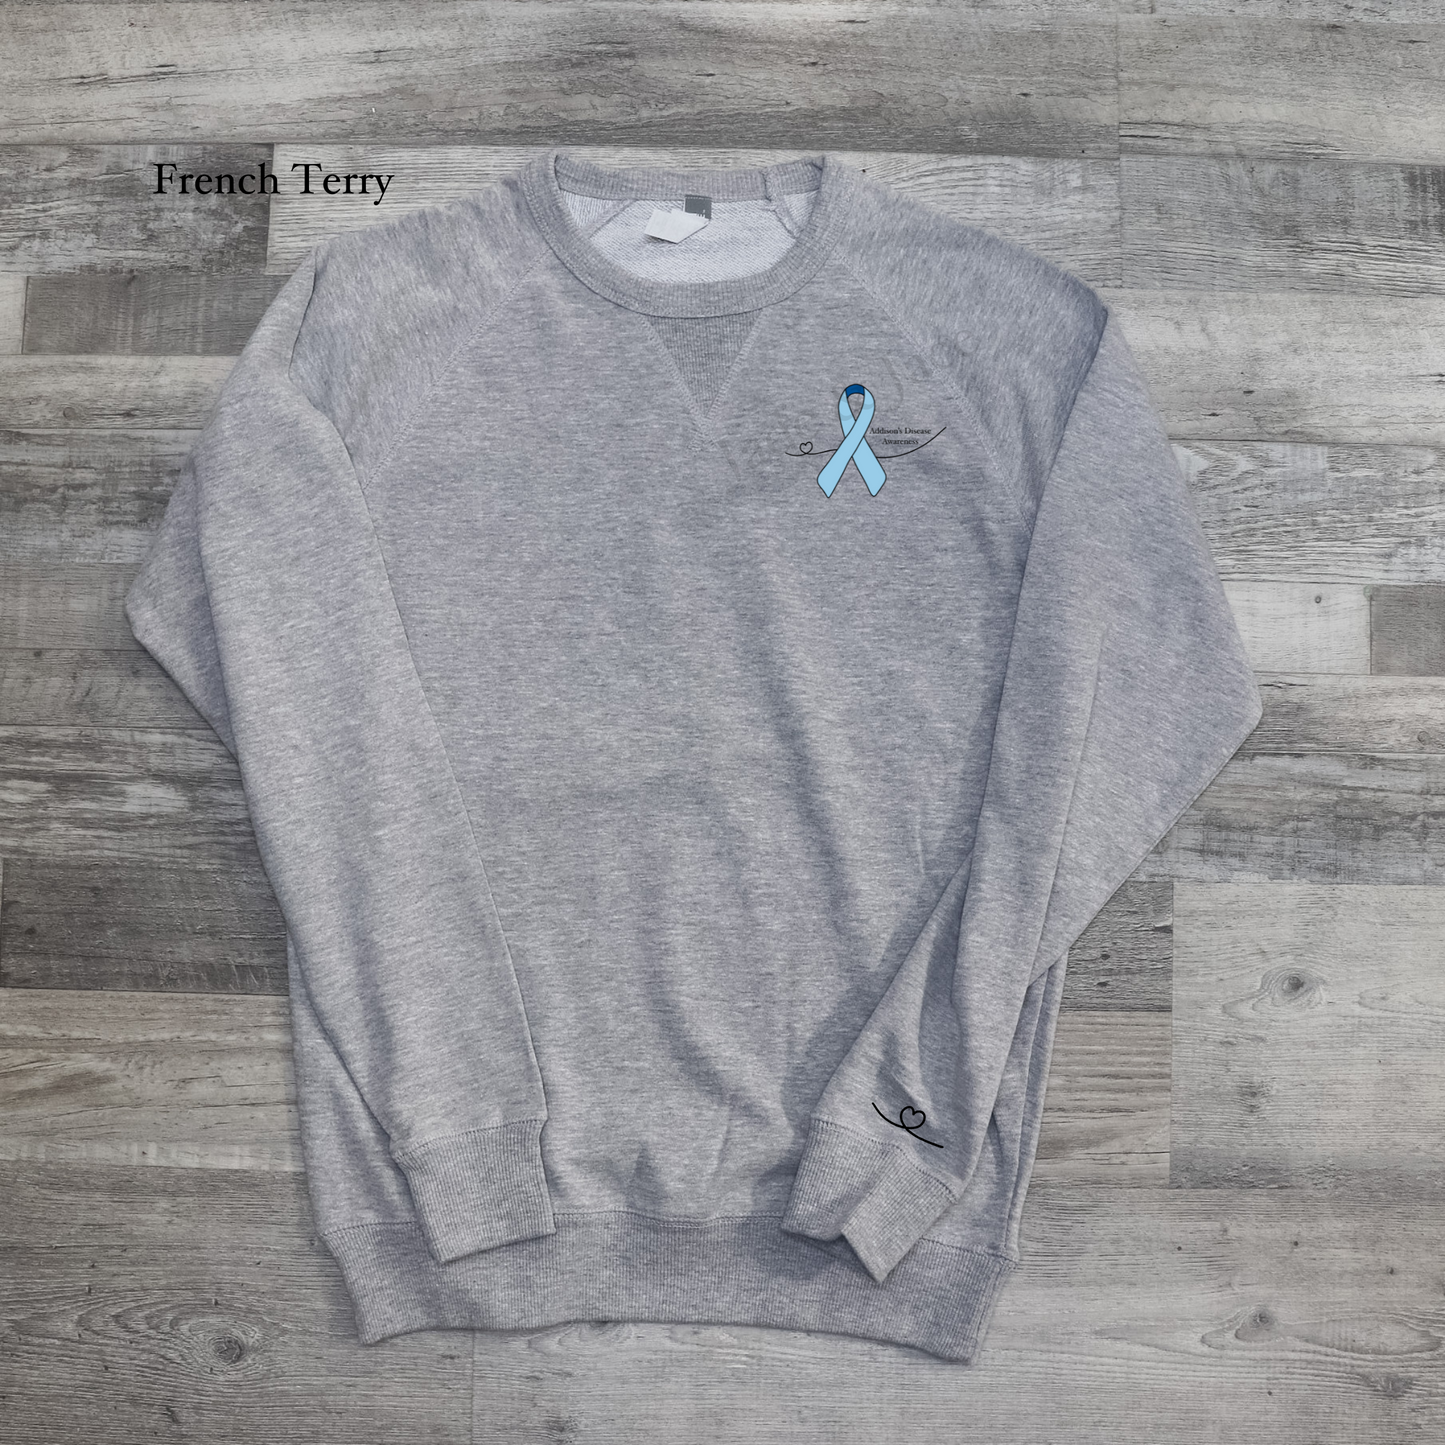 Addison’s Disease Awareness Crewneck Sweatshirt